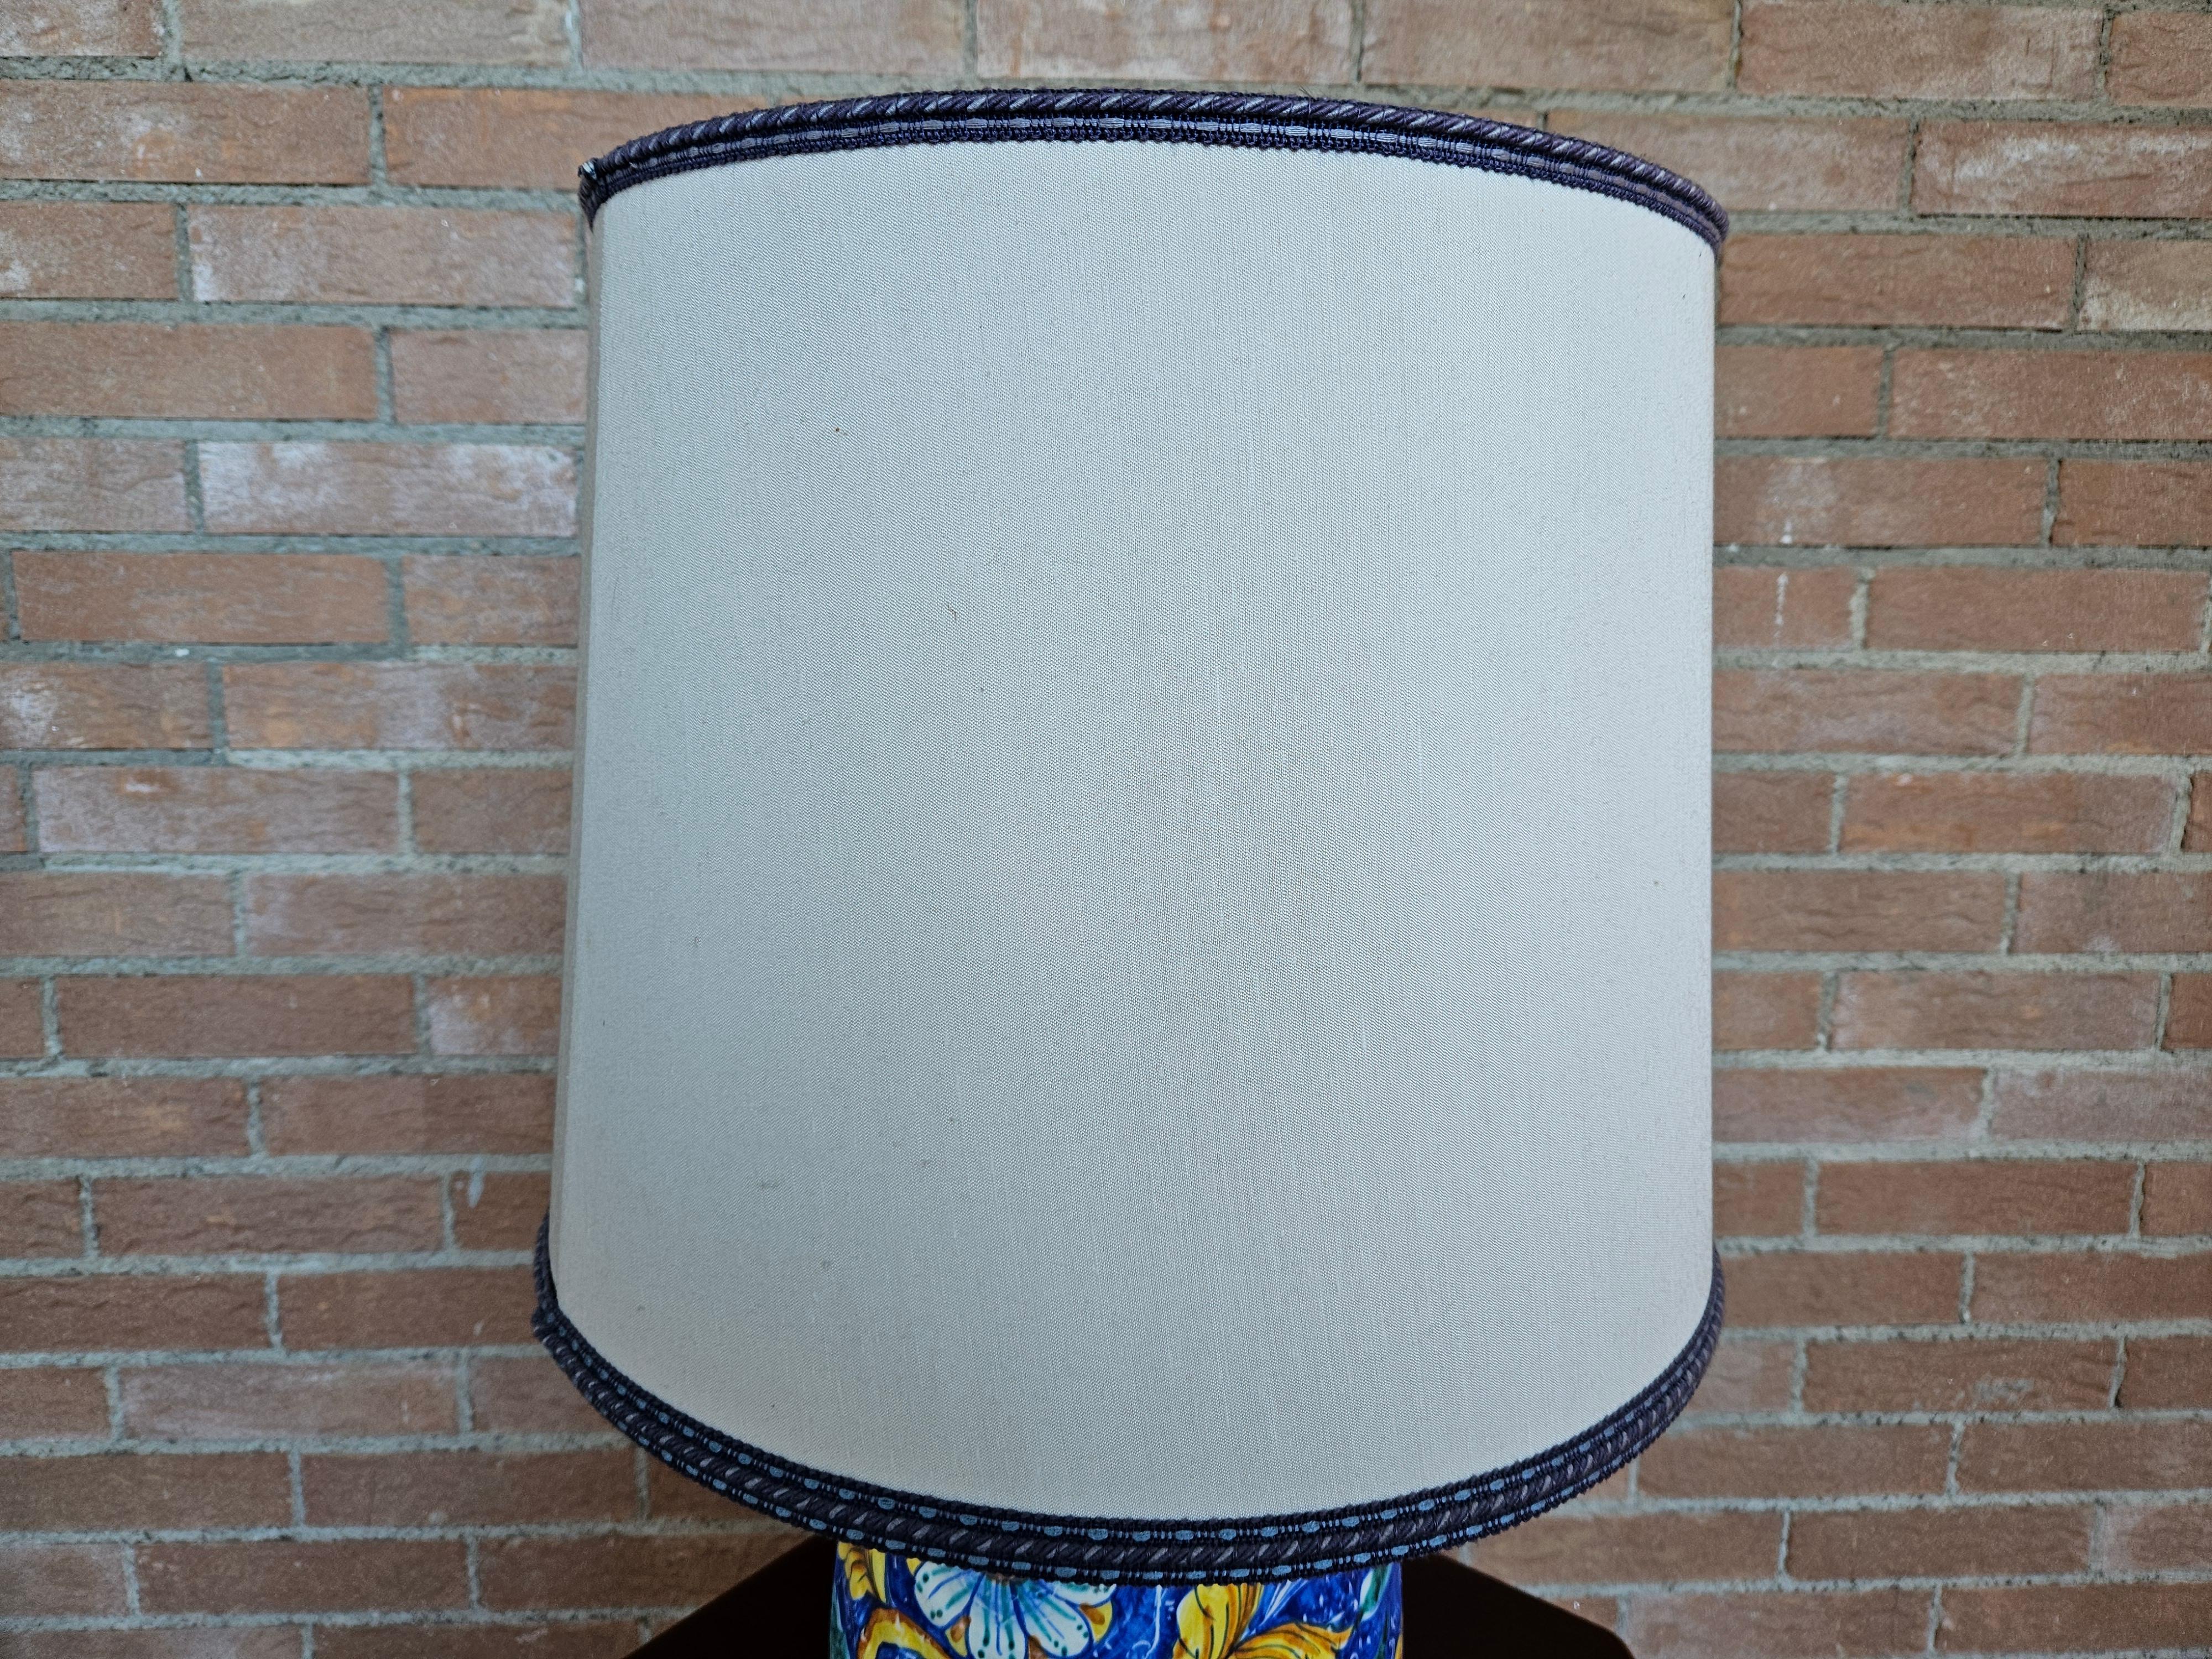 Bunt und lebendig bemalte Keramik-Tischlampe mit cremefarbenem Stoffschirm und blauen Verzierungen.

Glühbirne nicht enthalten.
